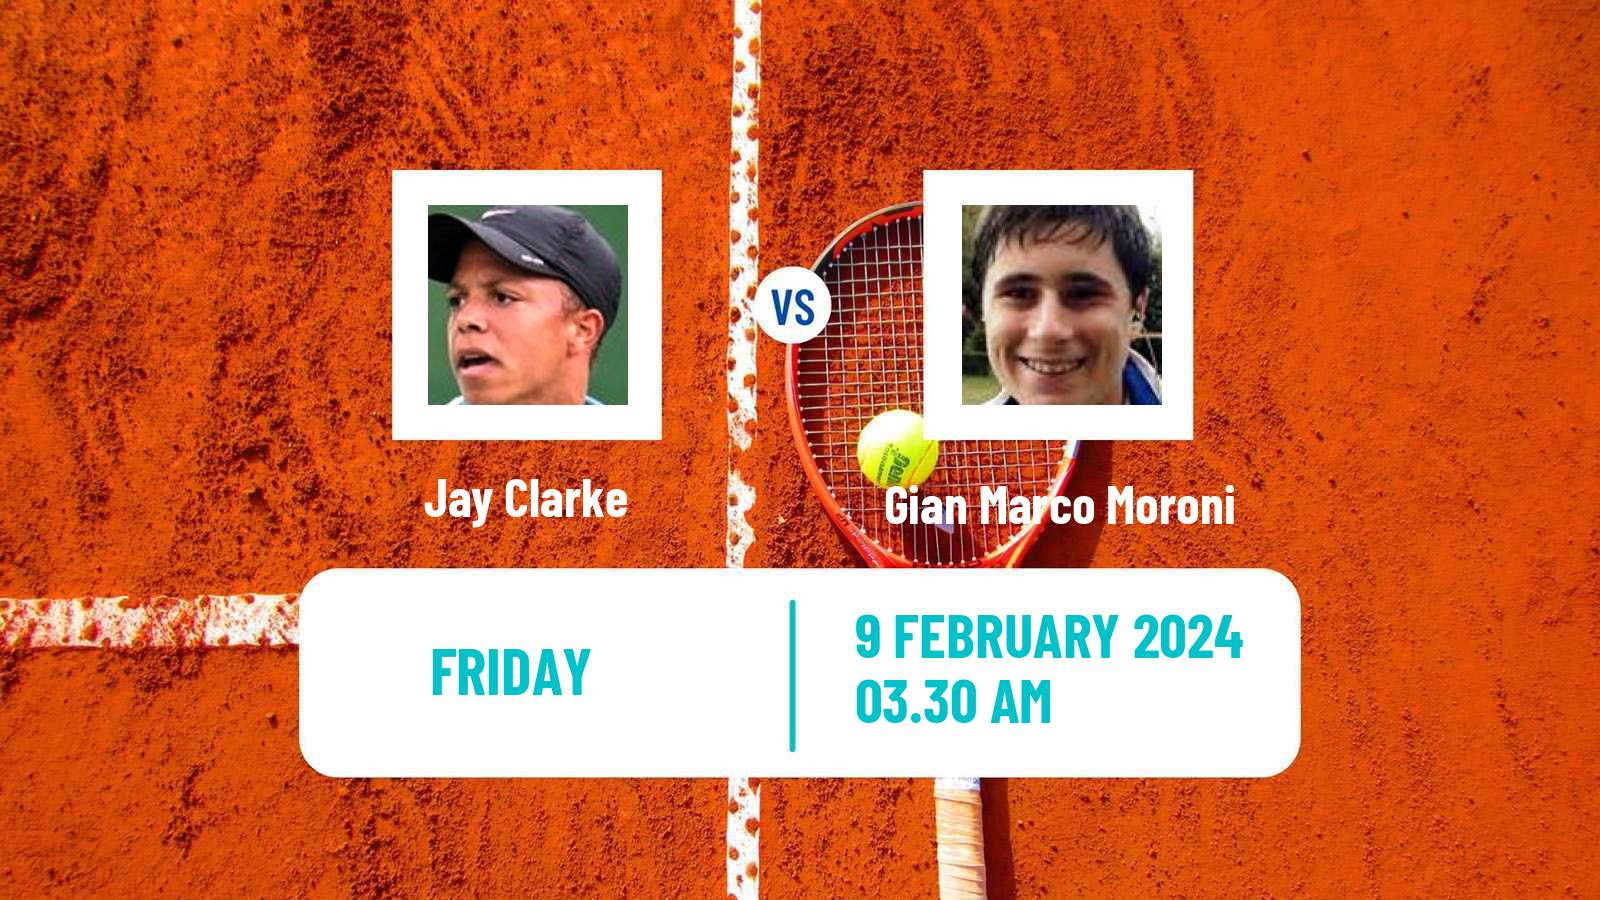 Tennis ITF M25 Hammamet 2 Men Jay Clarke - Gian Marco Moroni